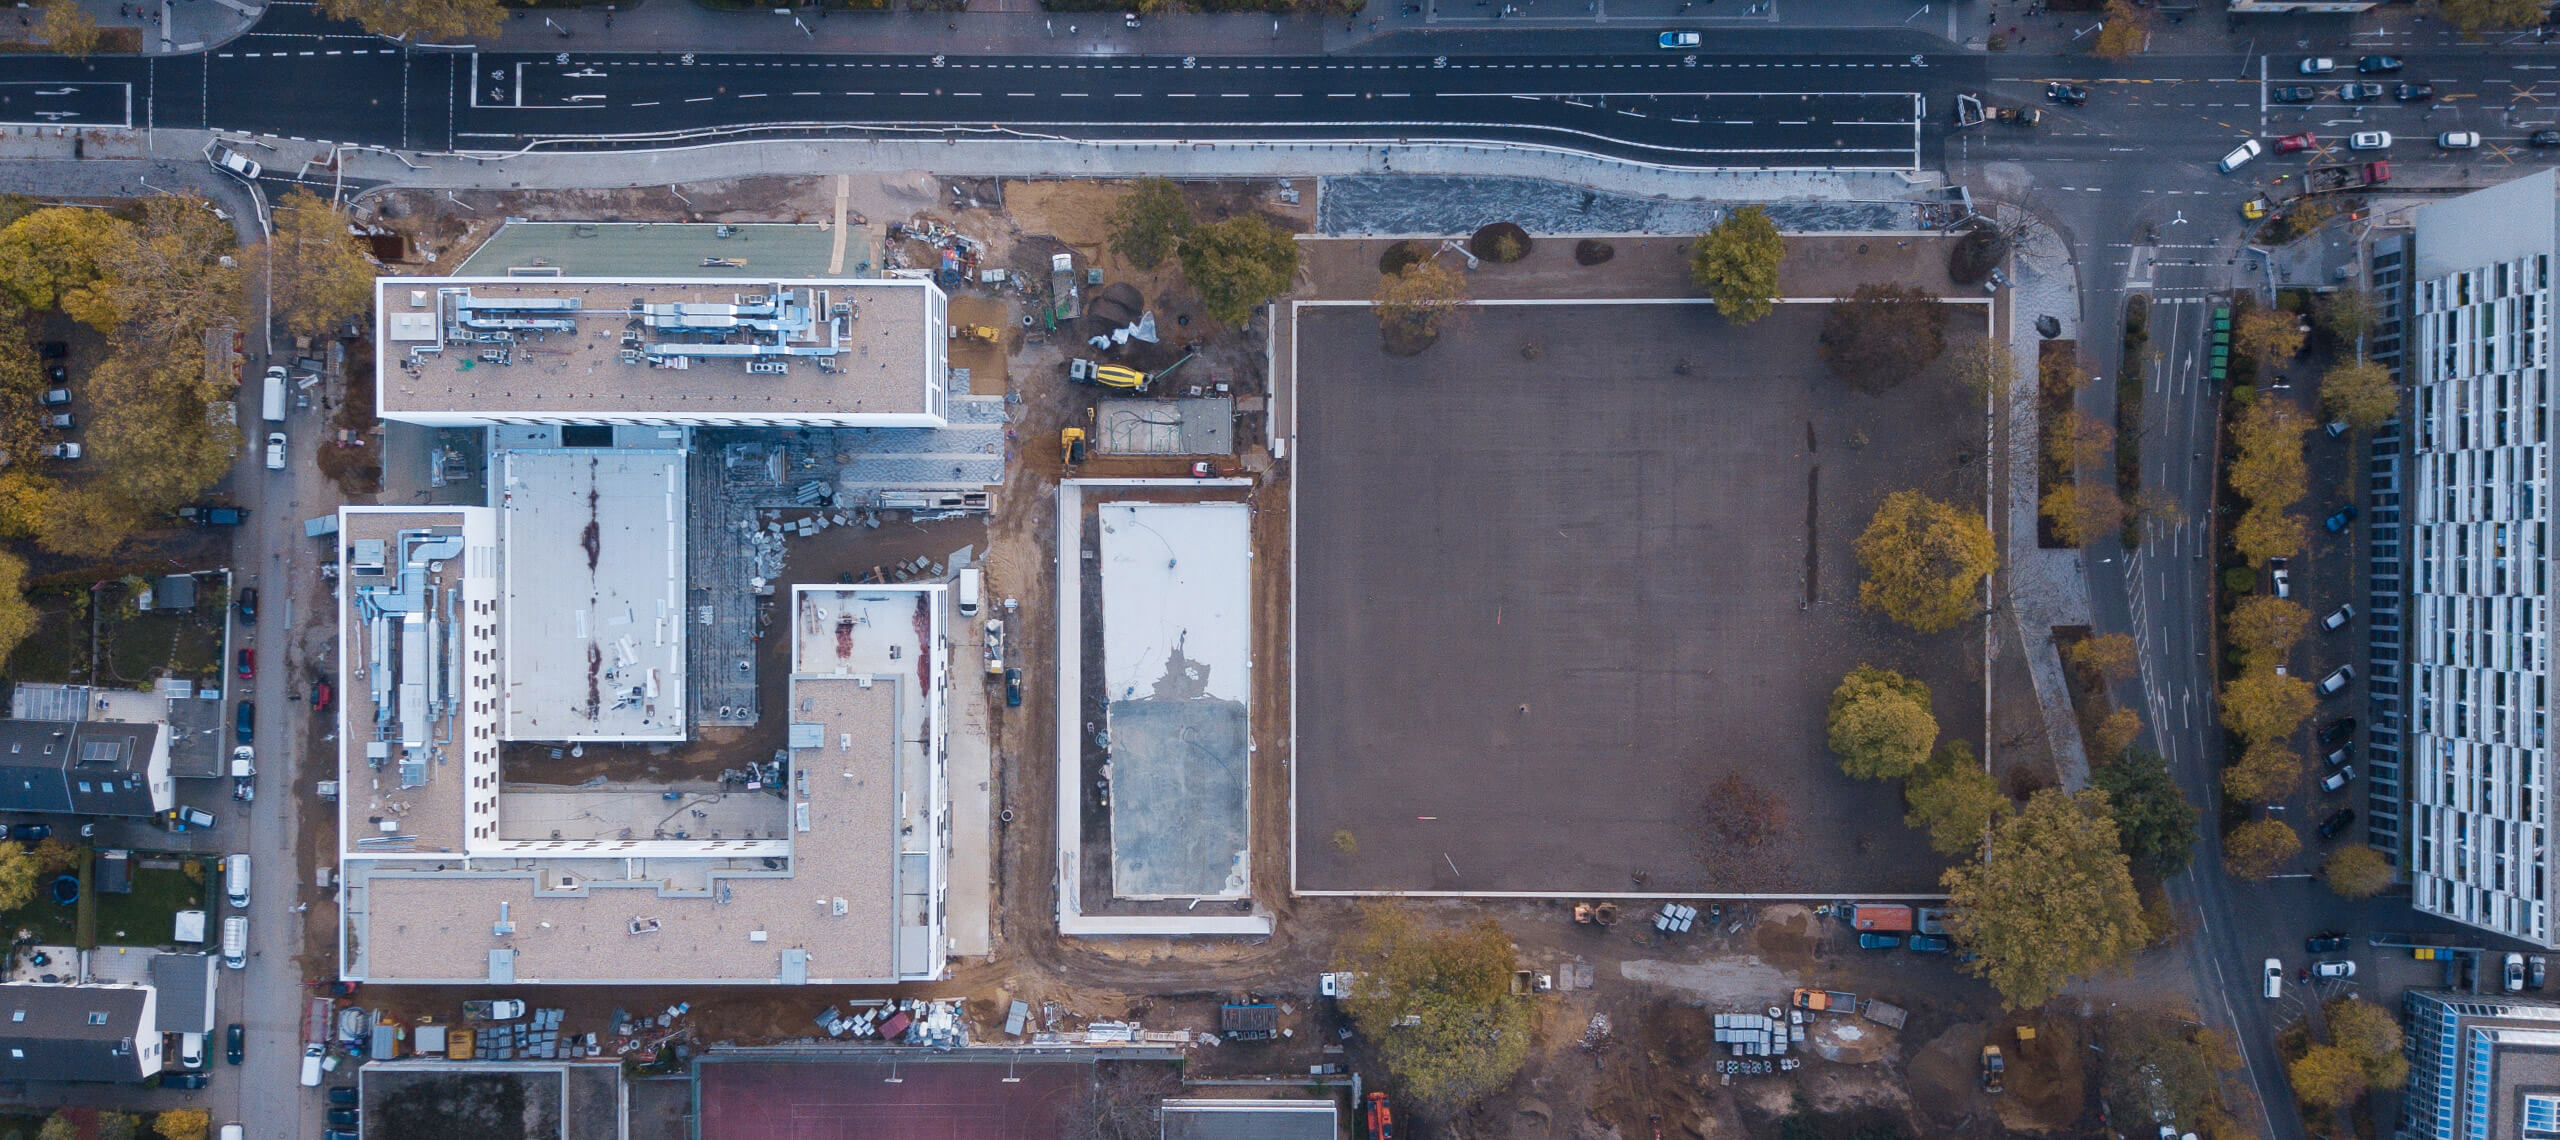 Stadtlichtung - Theodor-Heuss-Park - Luftbild aus der Bauphase